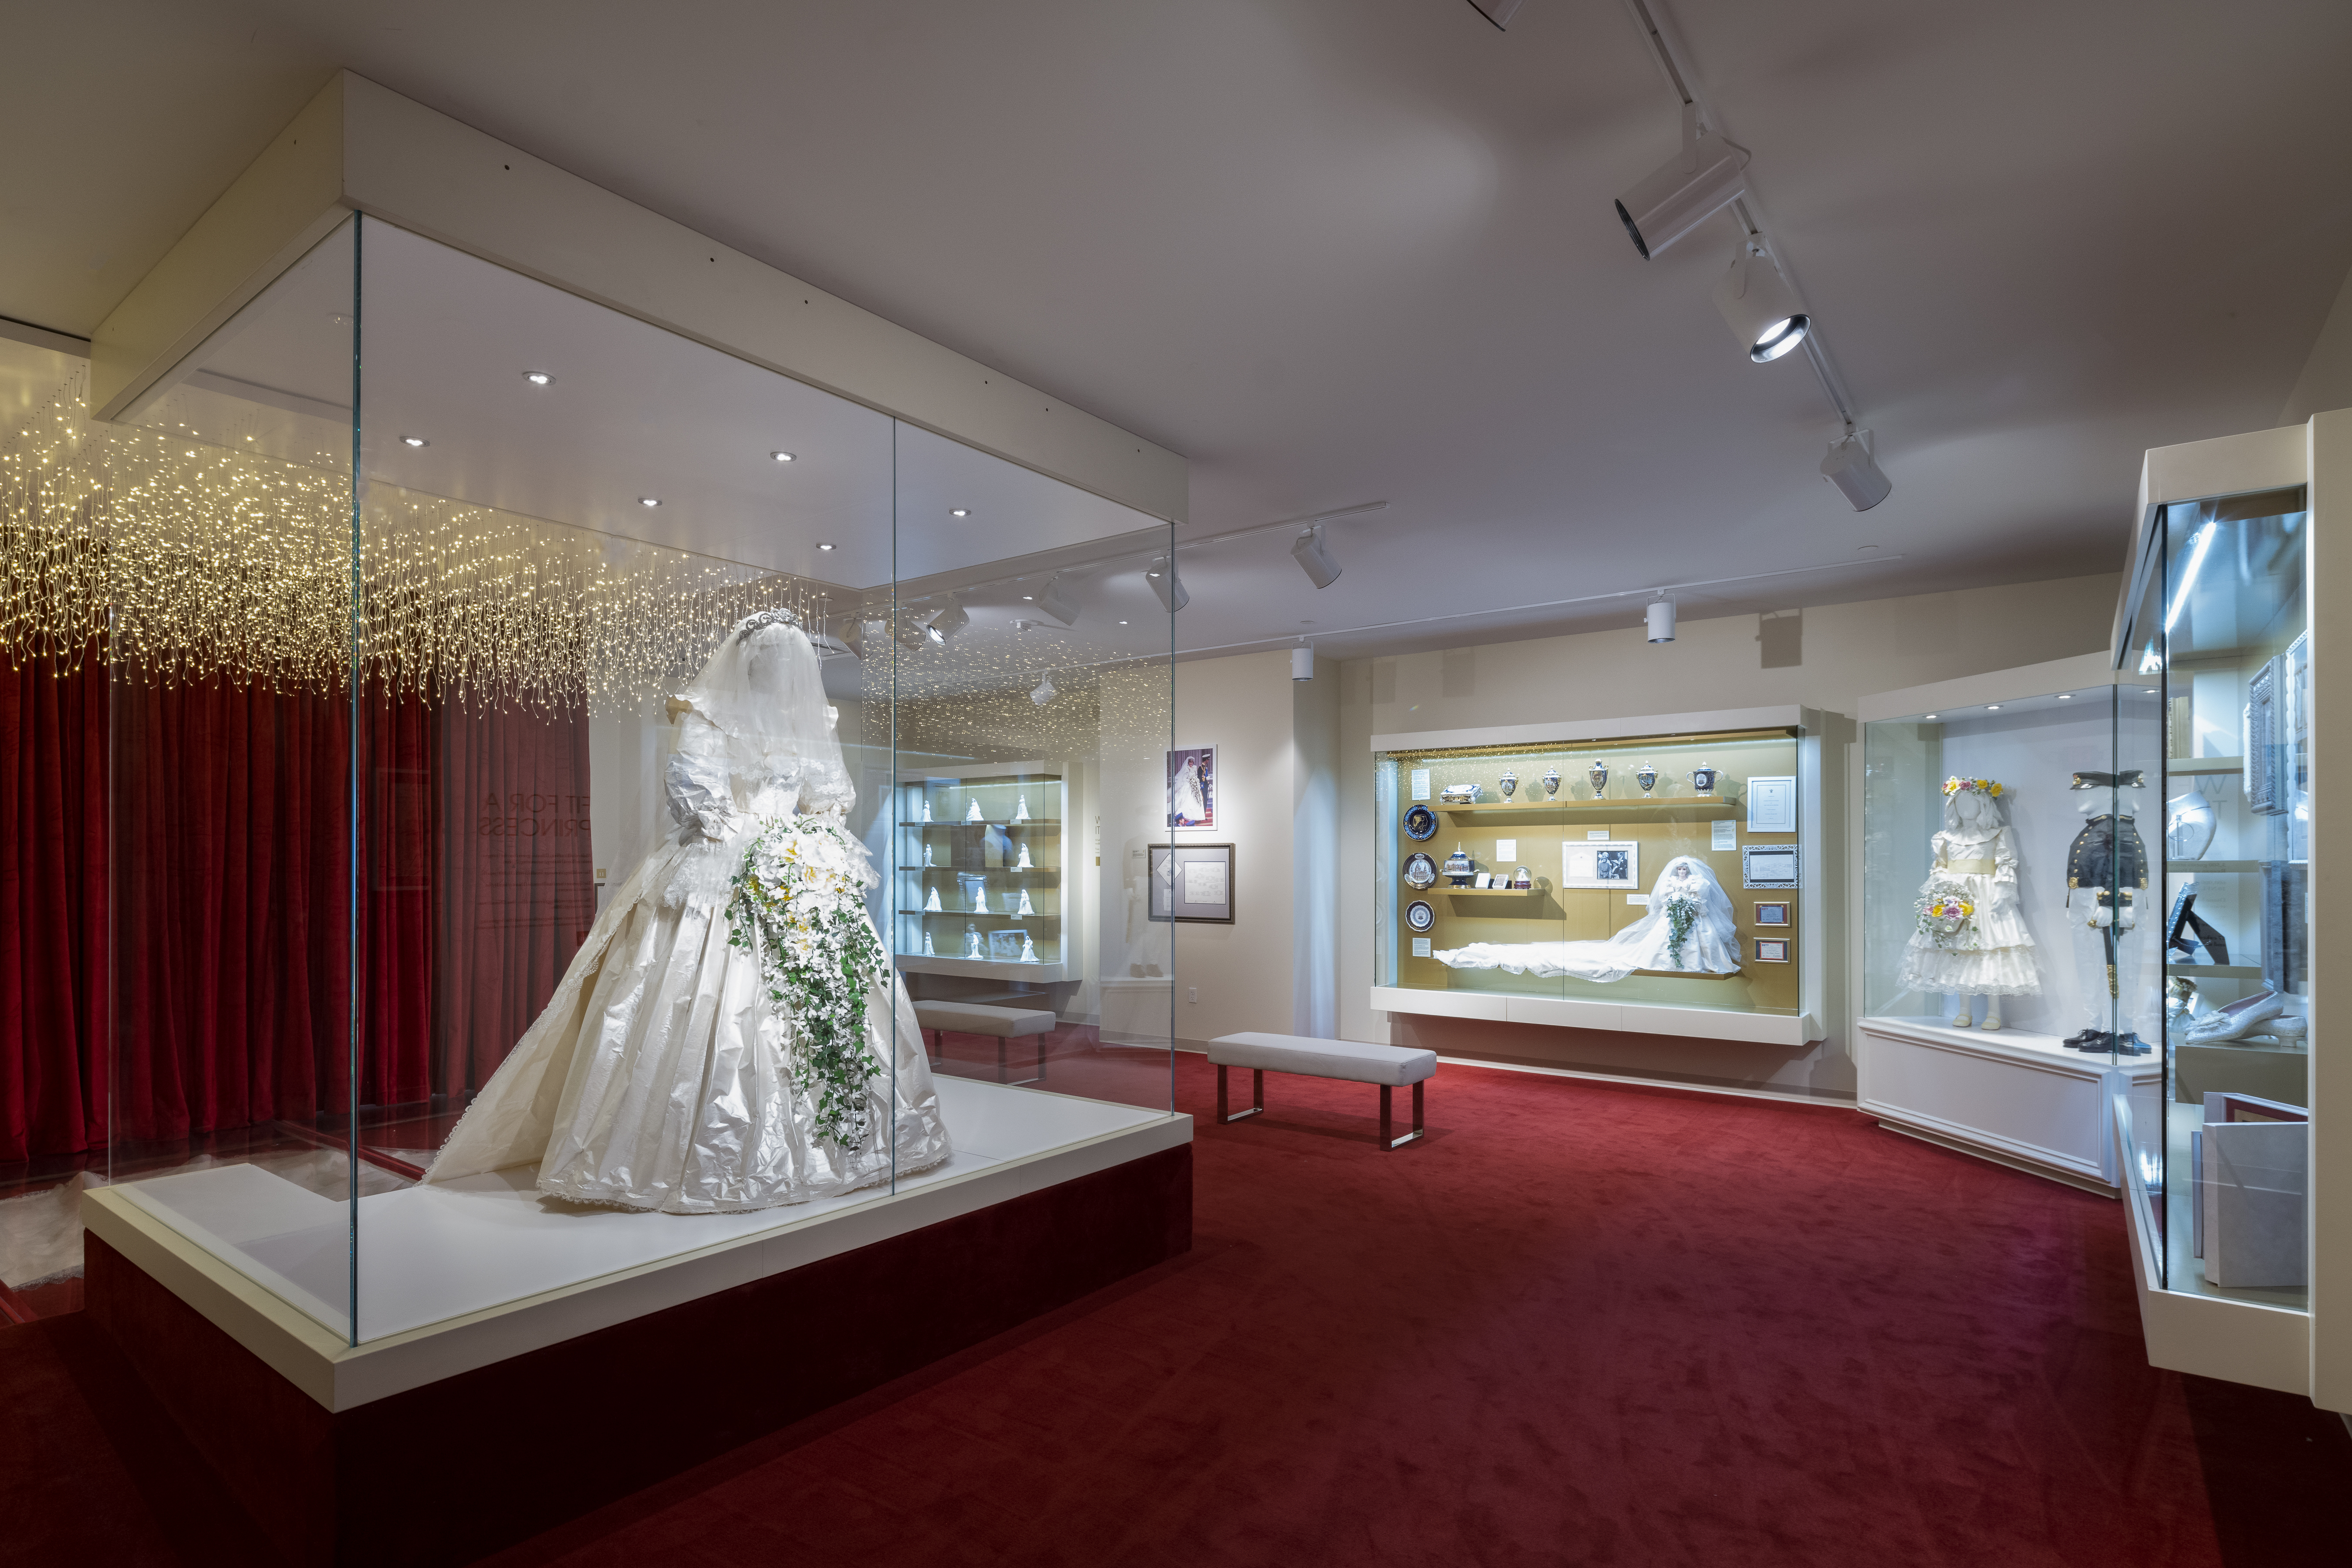 Princess Diana's wedding dress at the Princess Diana Exhibit